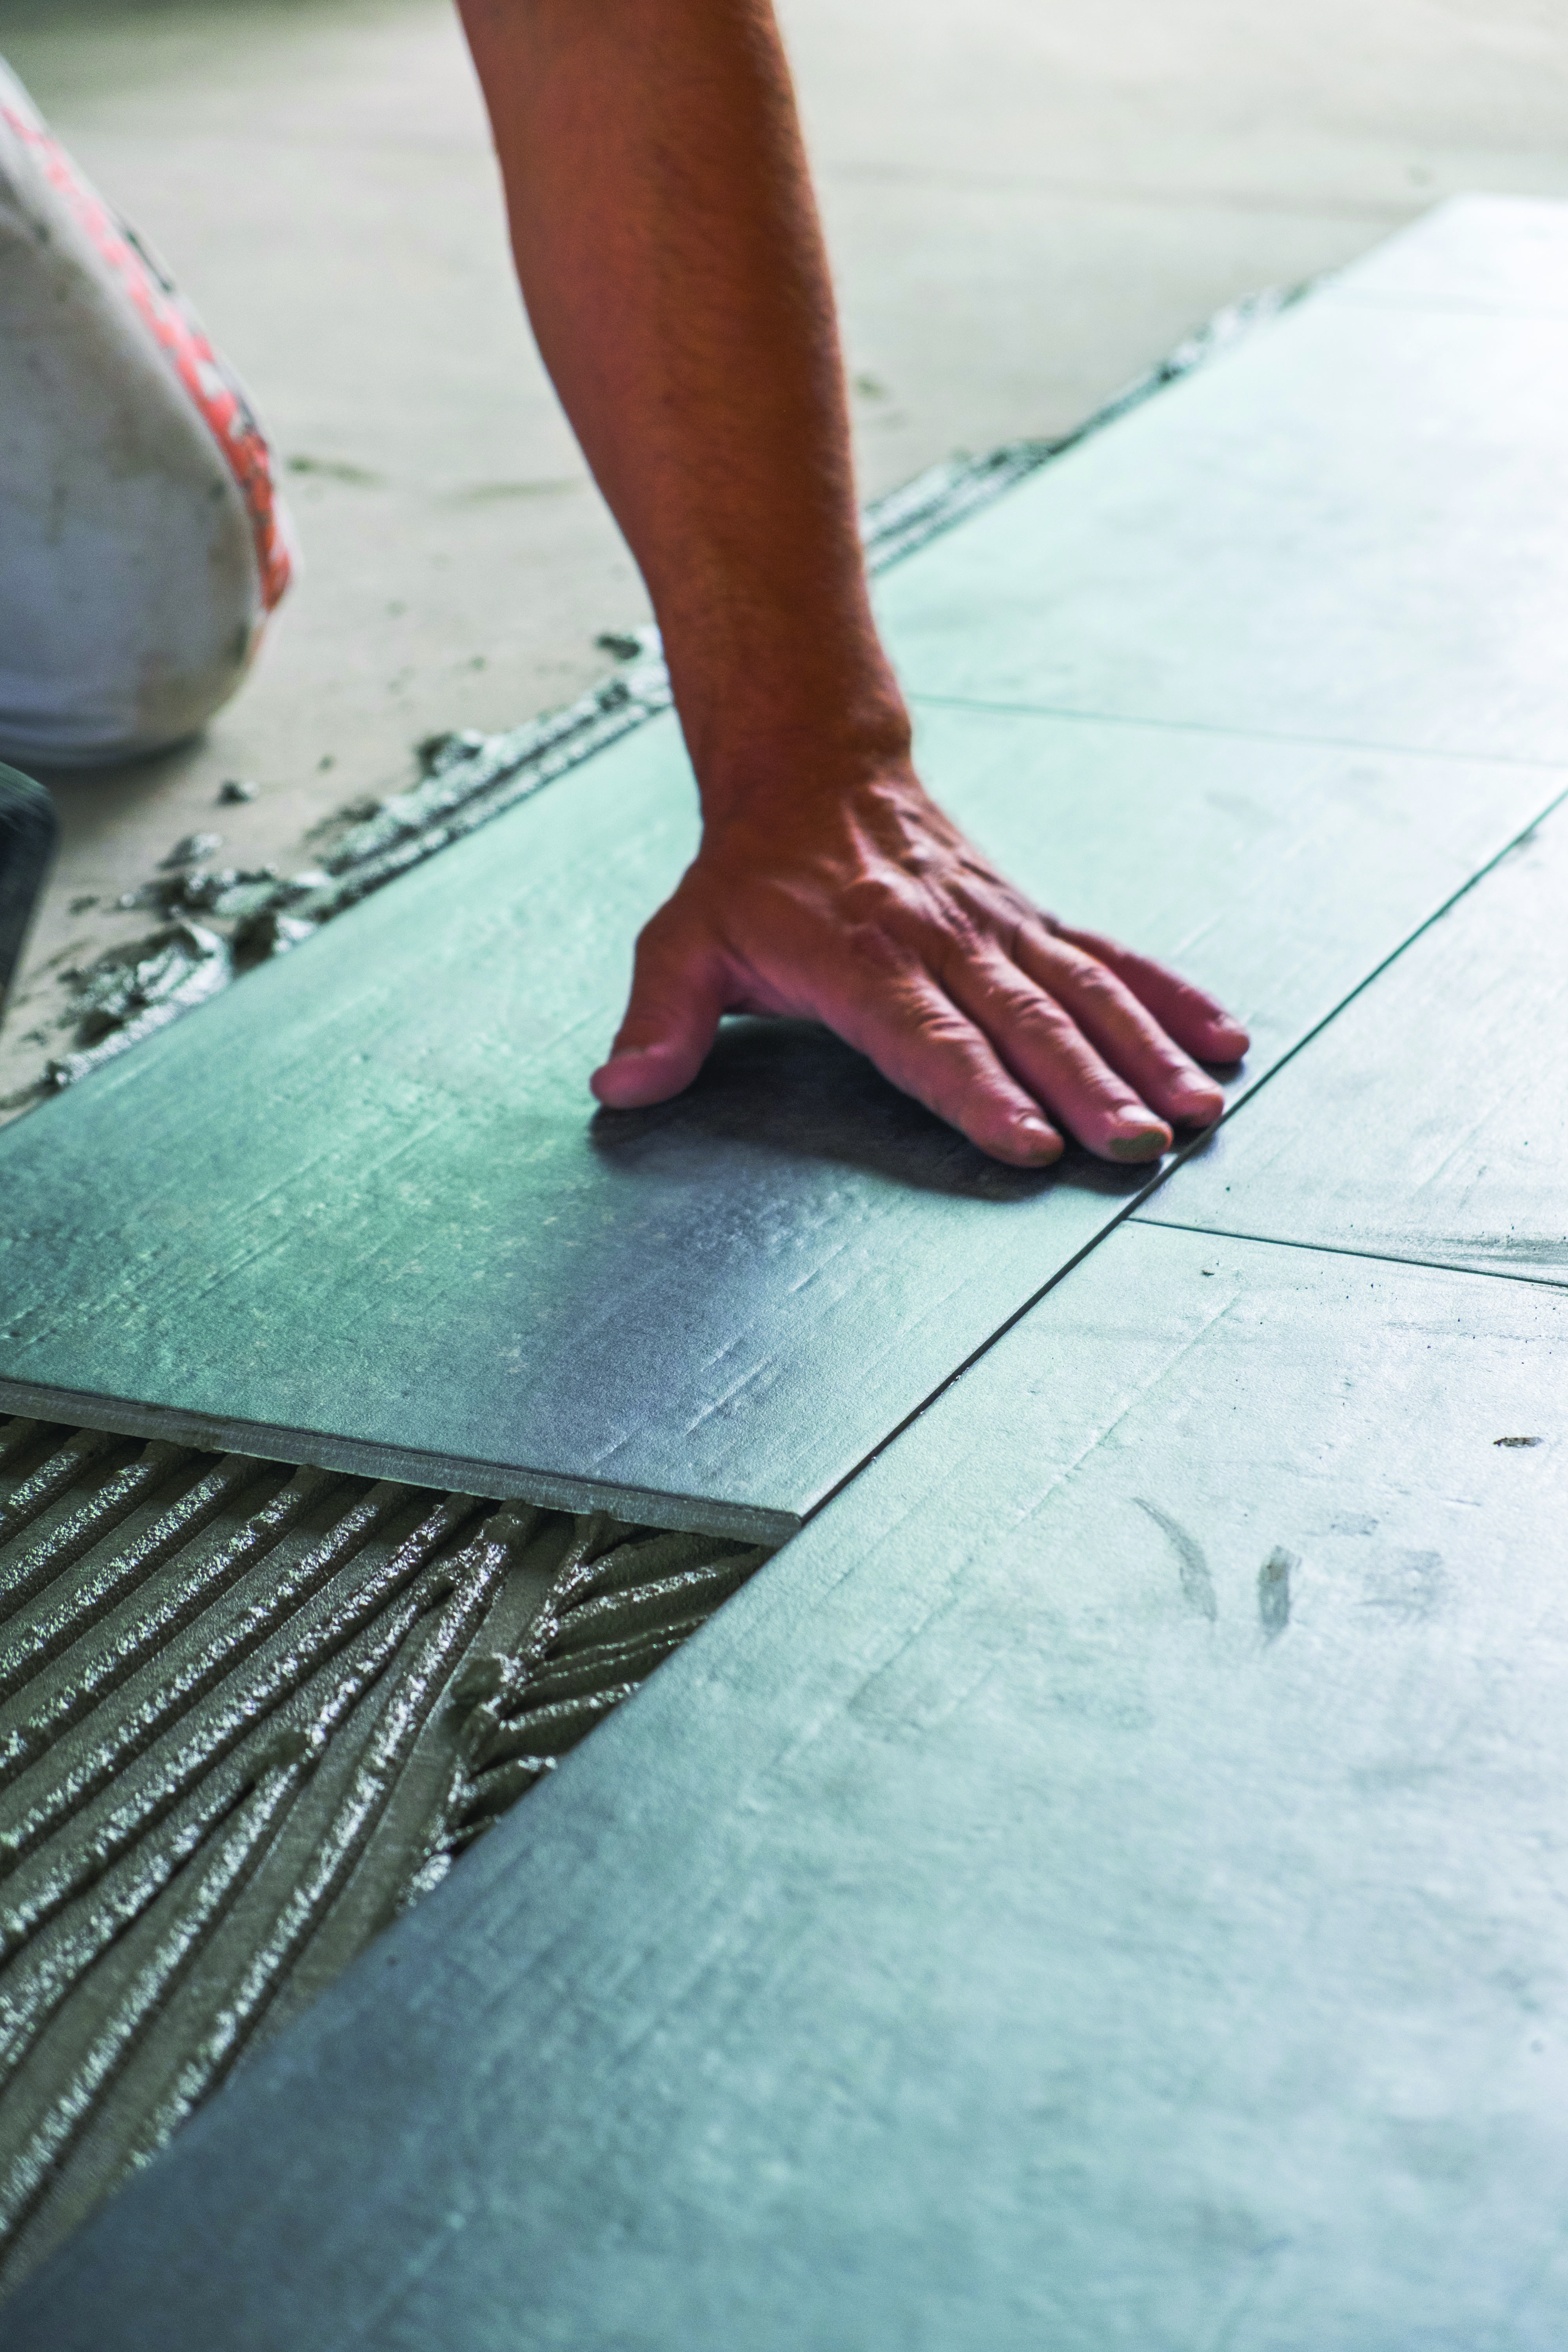 Worker installing ceramic floor tiles - LiUNA Local 183 Training Centre